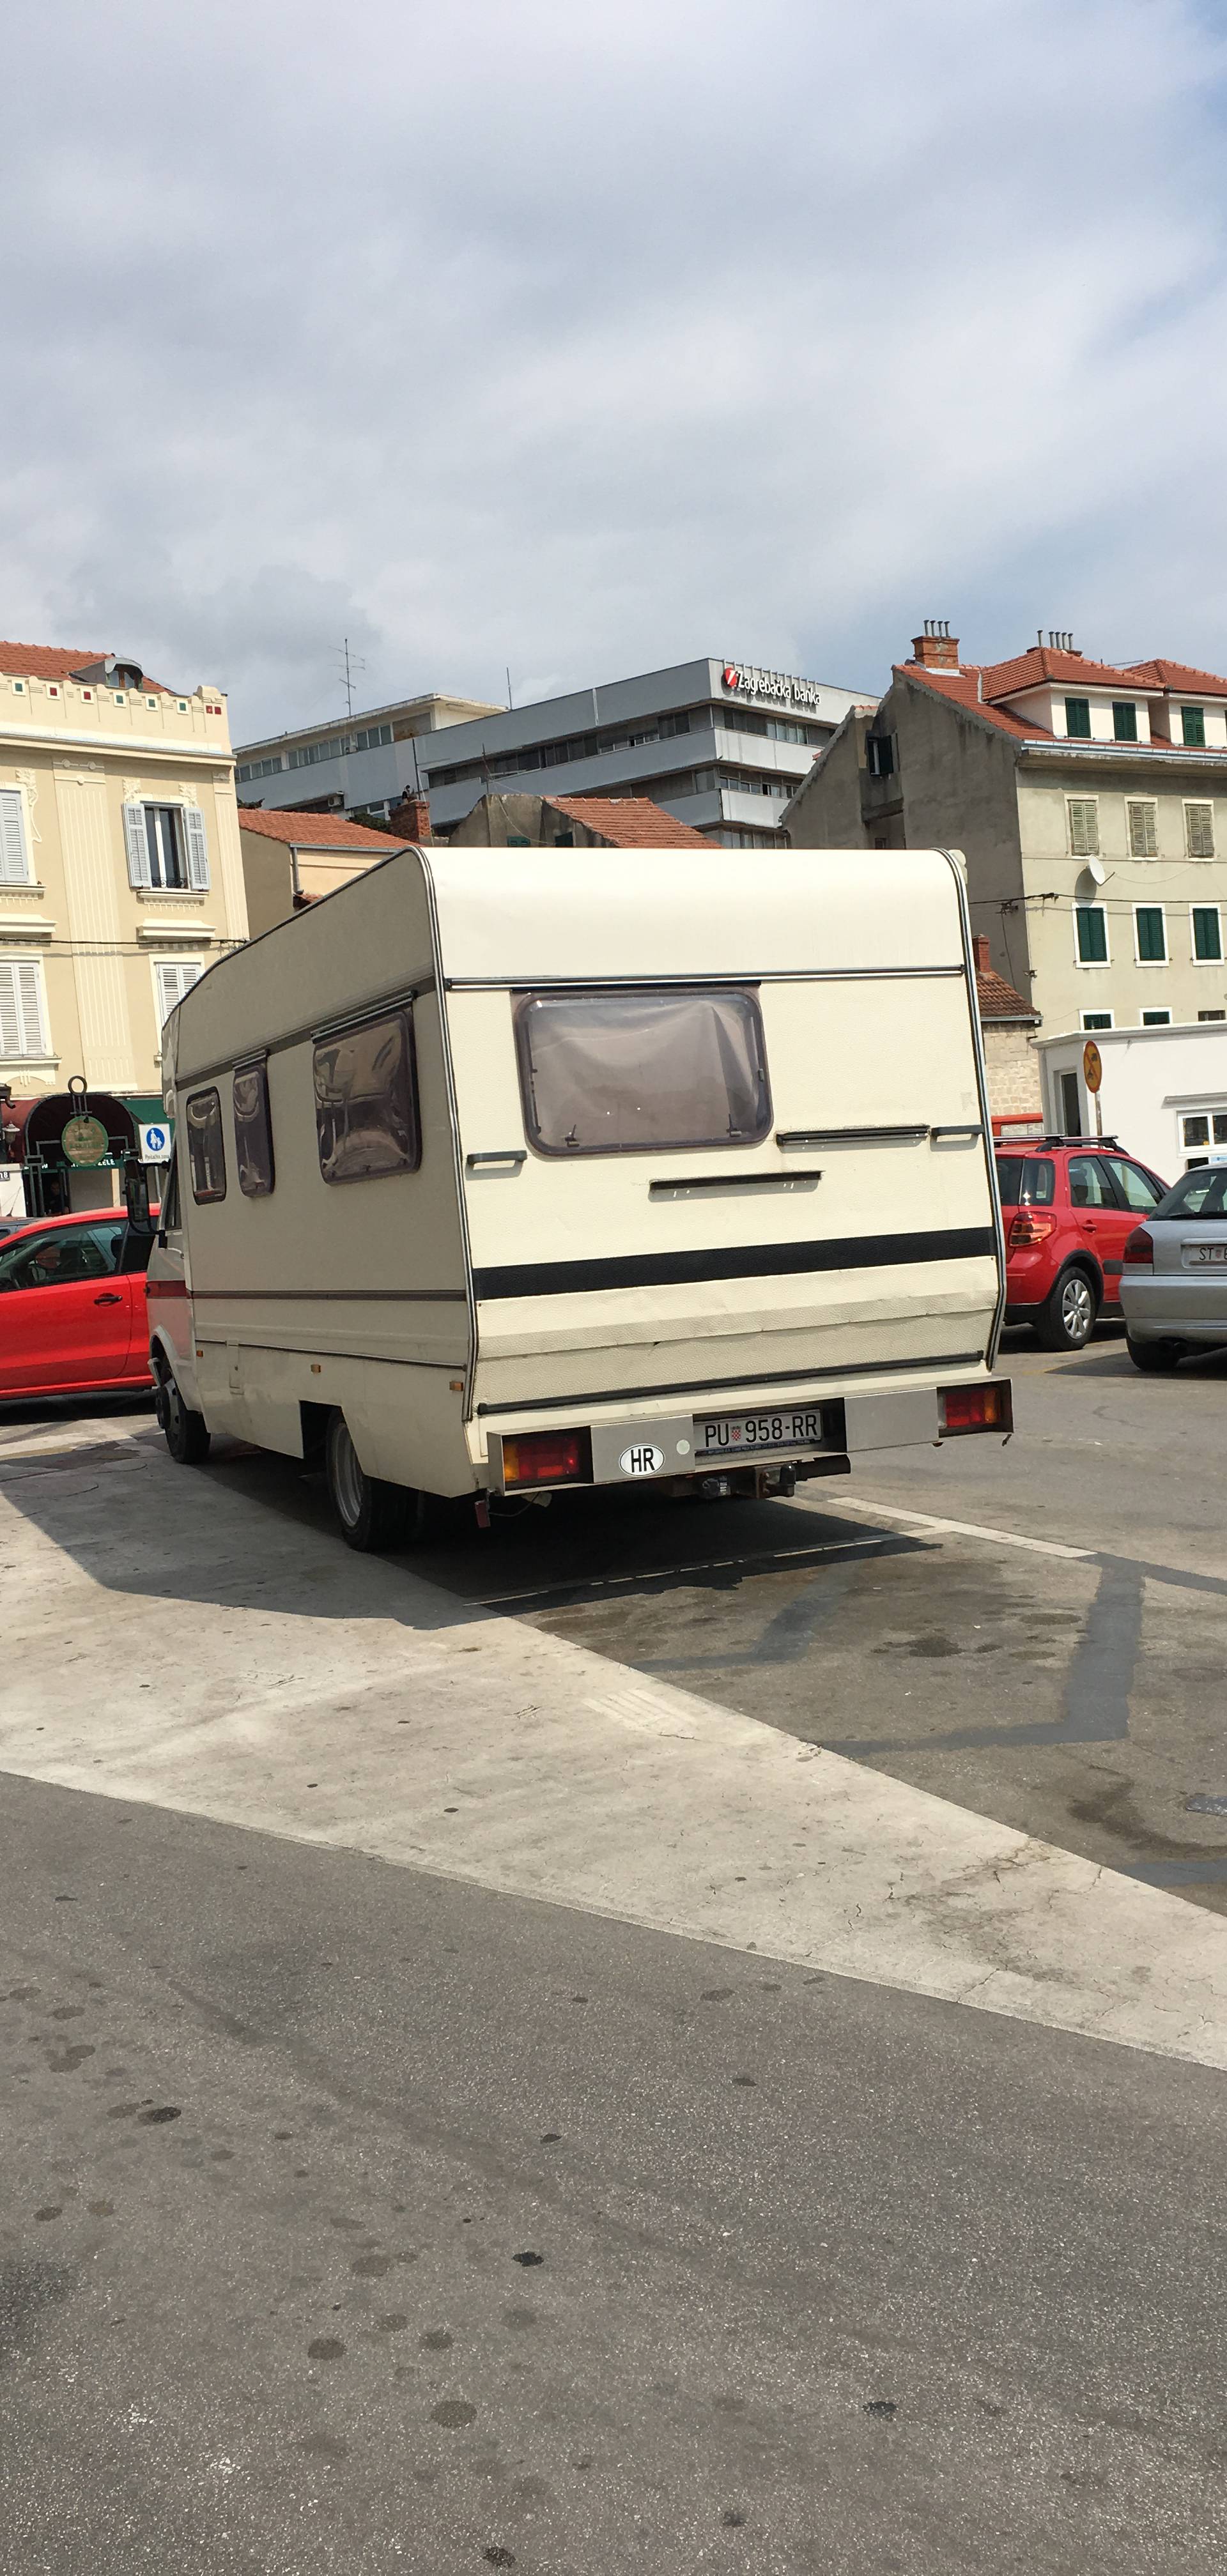 Došao i parkirao se u središtu Splita te ostao ondje živjeti